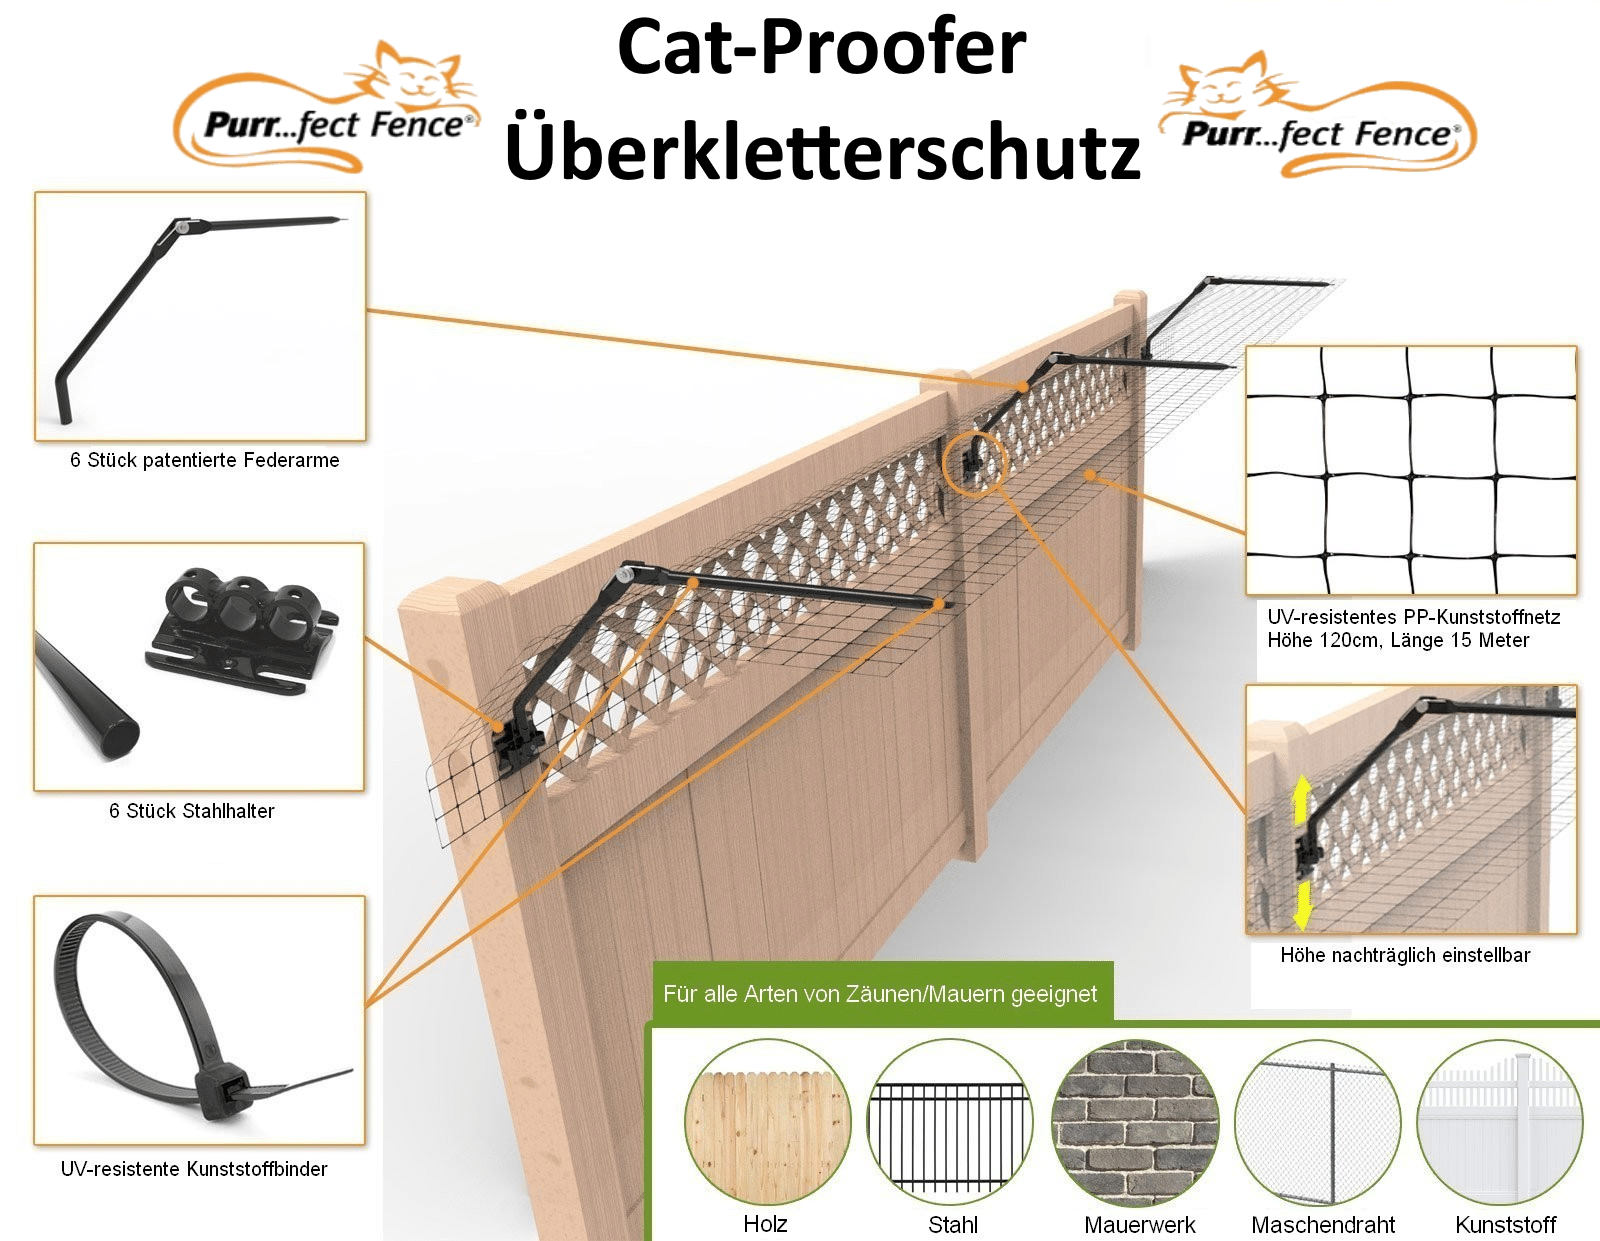 Überkletterschutz cat-proofer